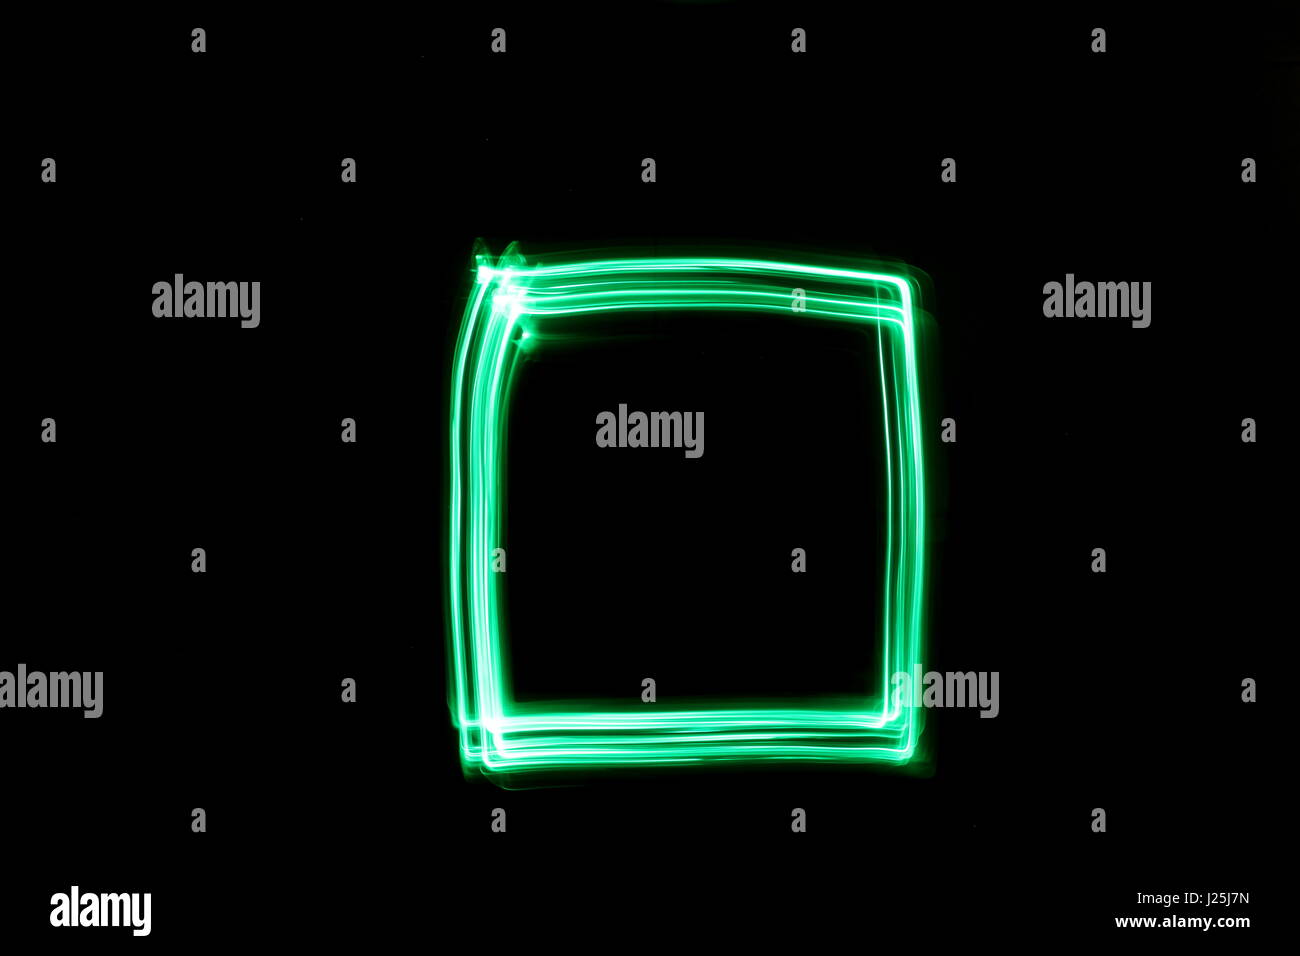 Una lunga esposizione fotografia di neon di colore verde in un astratto casella profilo di forma contro uno sfondo nero. Luce fotografia pittura, di colore in astratto Foto Stock